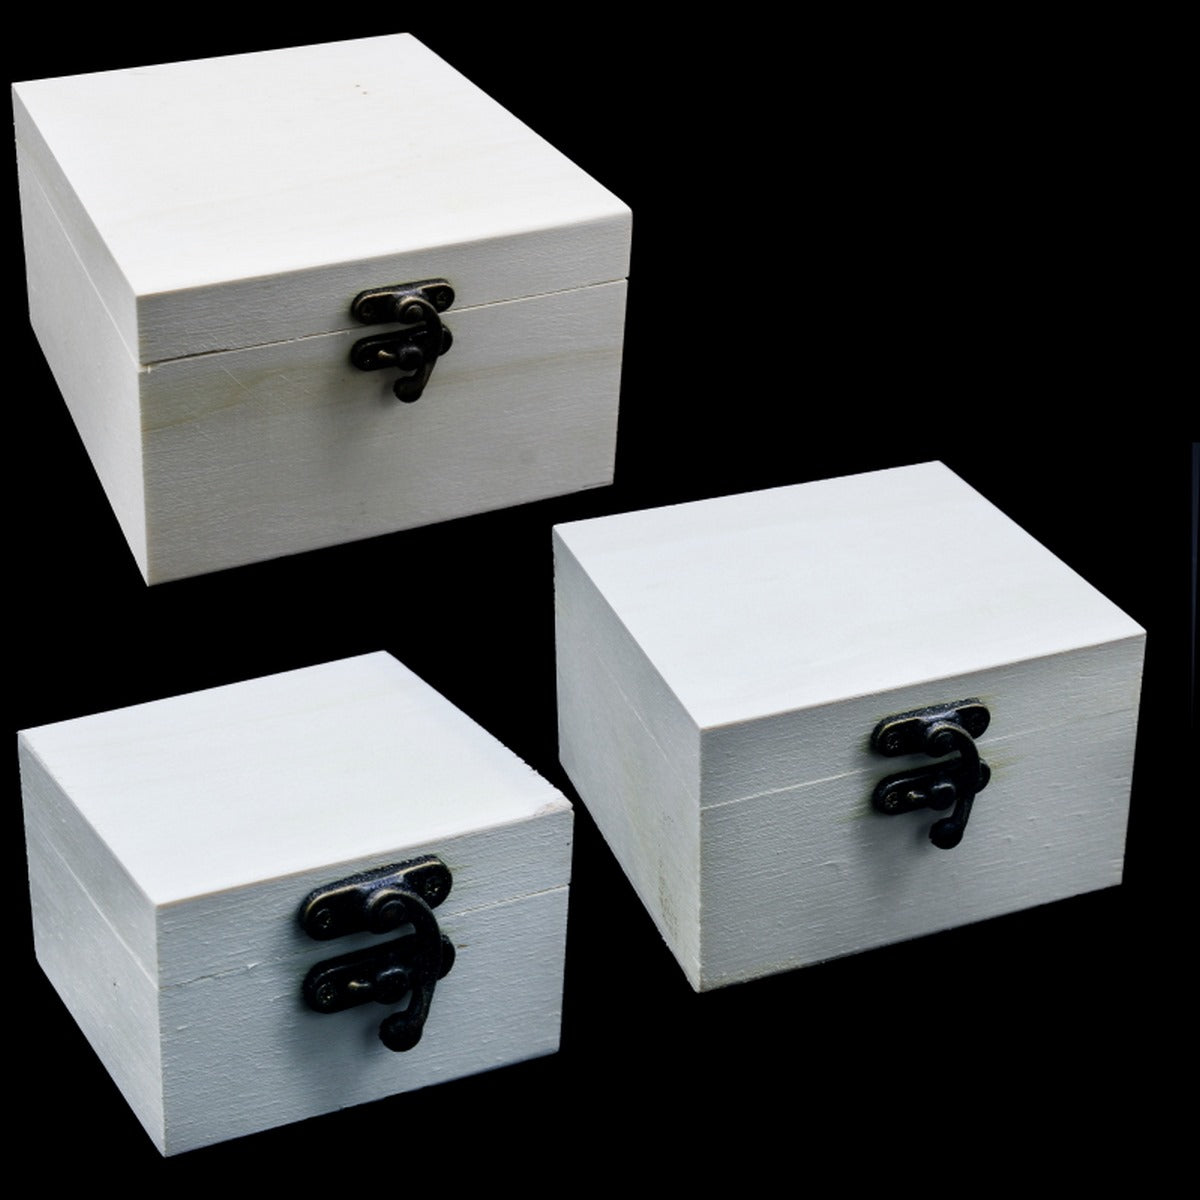 jags-mumbai Wooden Box Wooden Empty Box 3pcs 5.5x5.5x3.5cm WEB1466